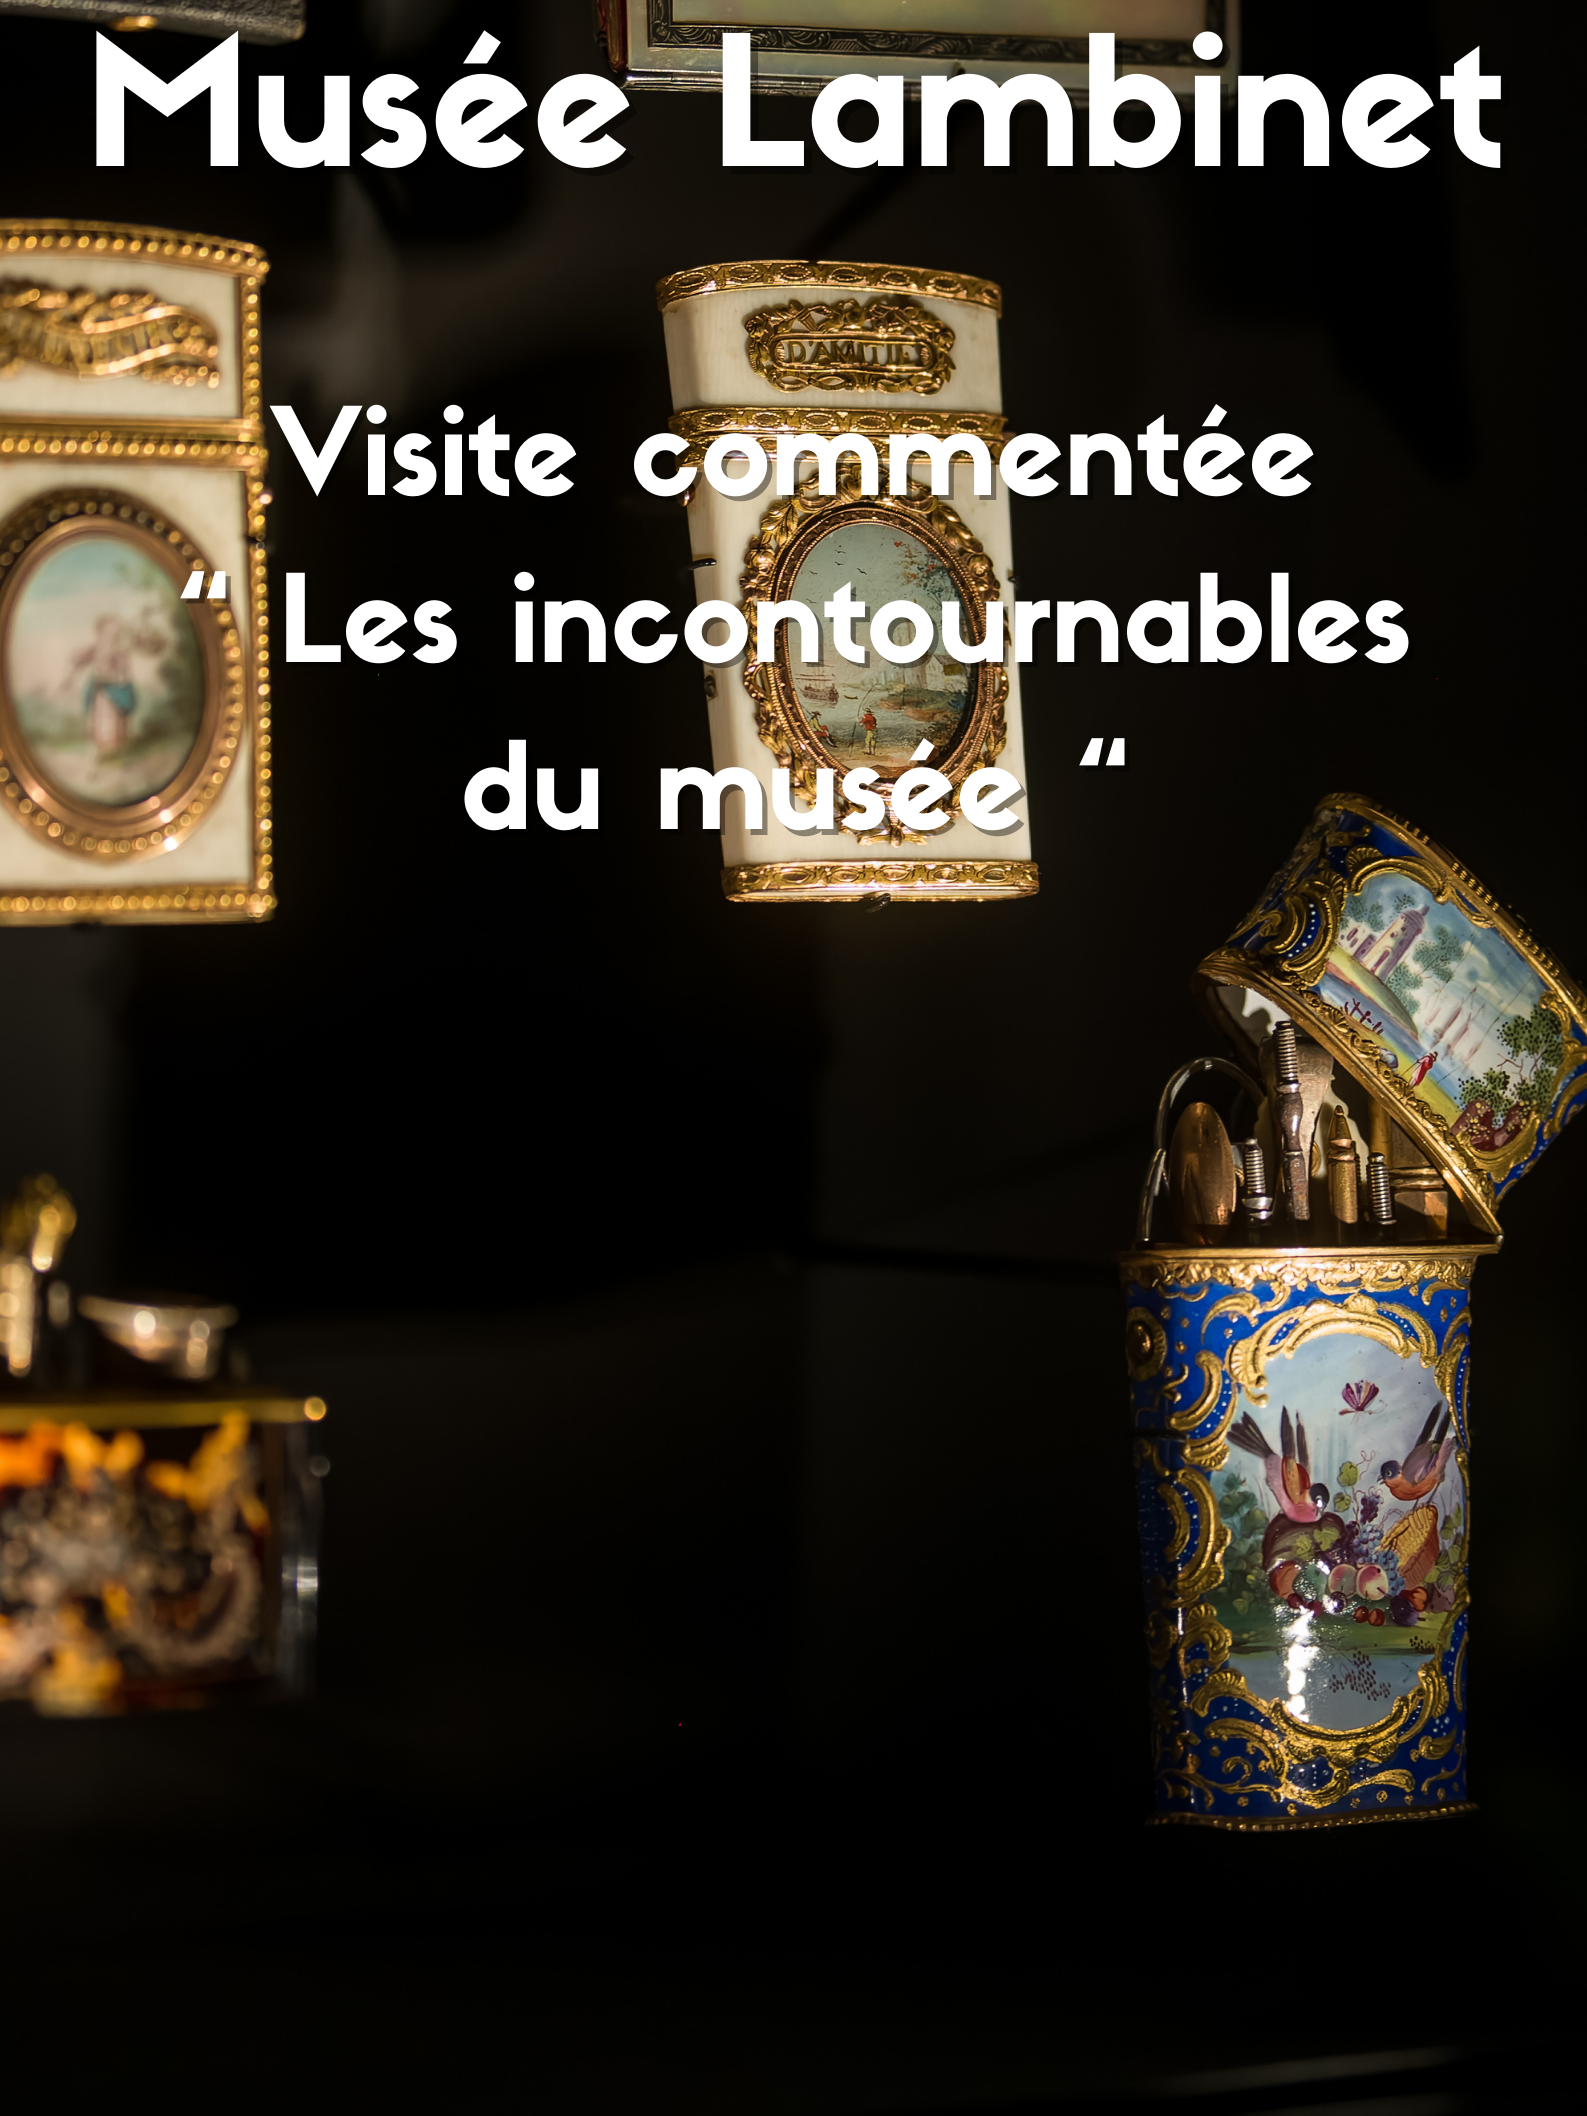 Visite commentée “Les incontournables du musée”